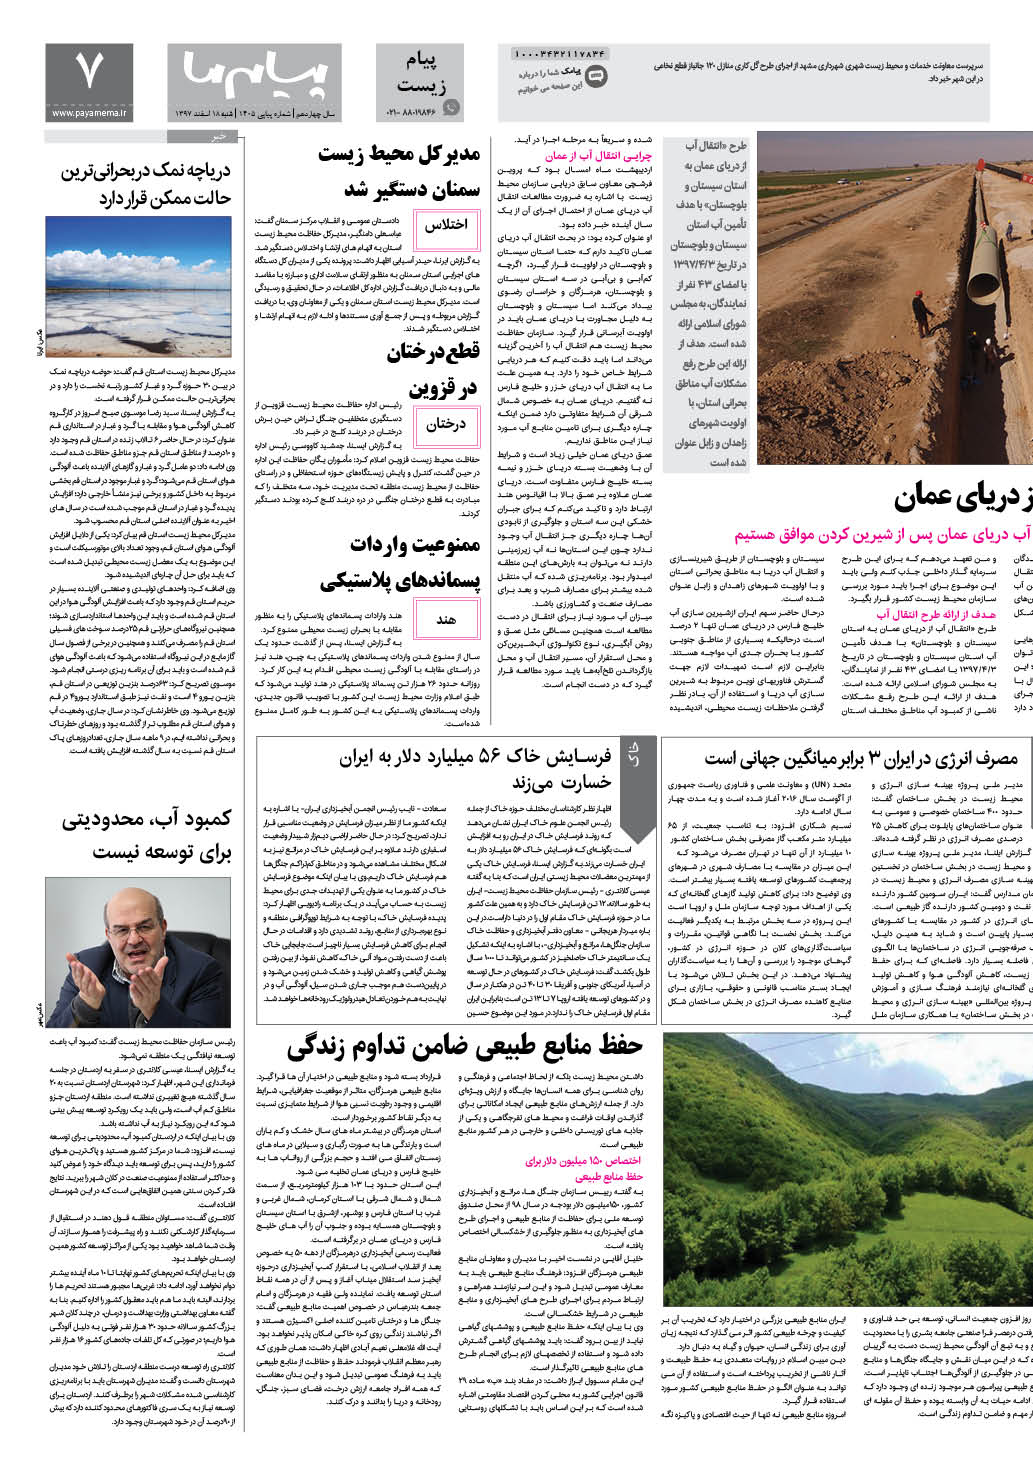 صفحه پیام زیست شماره 1405 روزنامه پیام ما